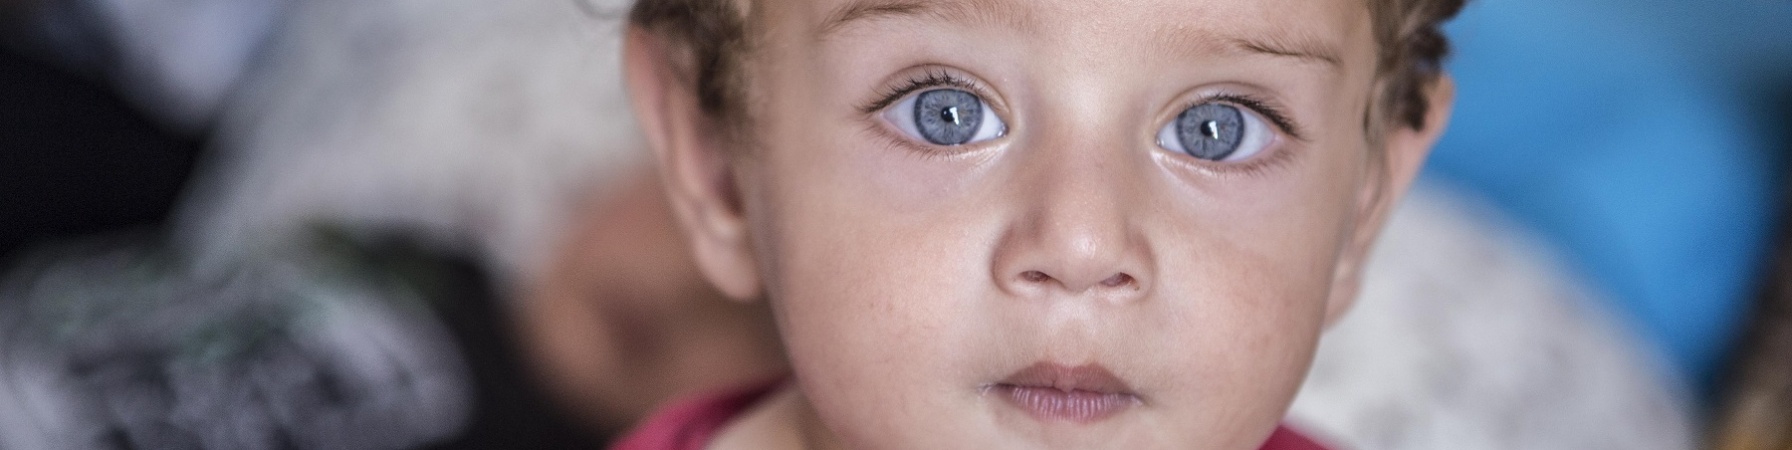 Primo piano bambino biondo e occhi azzurri